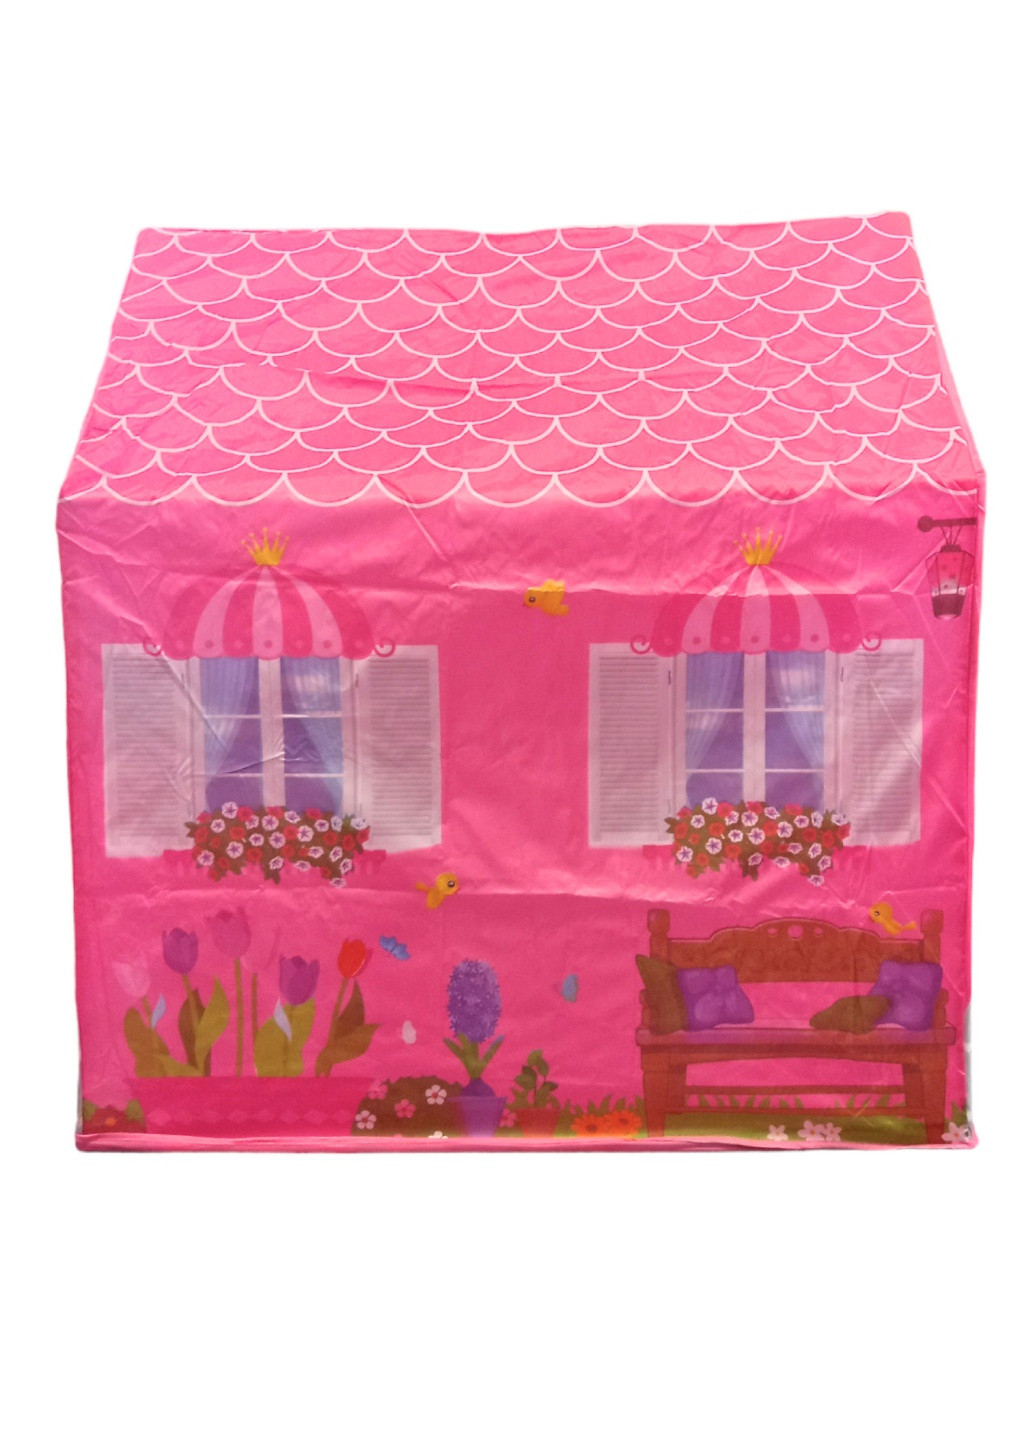 Детская игровая палатка домик для принцессы палатка для девочки домик для детей Shantou (259906558)